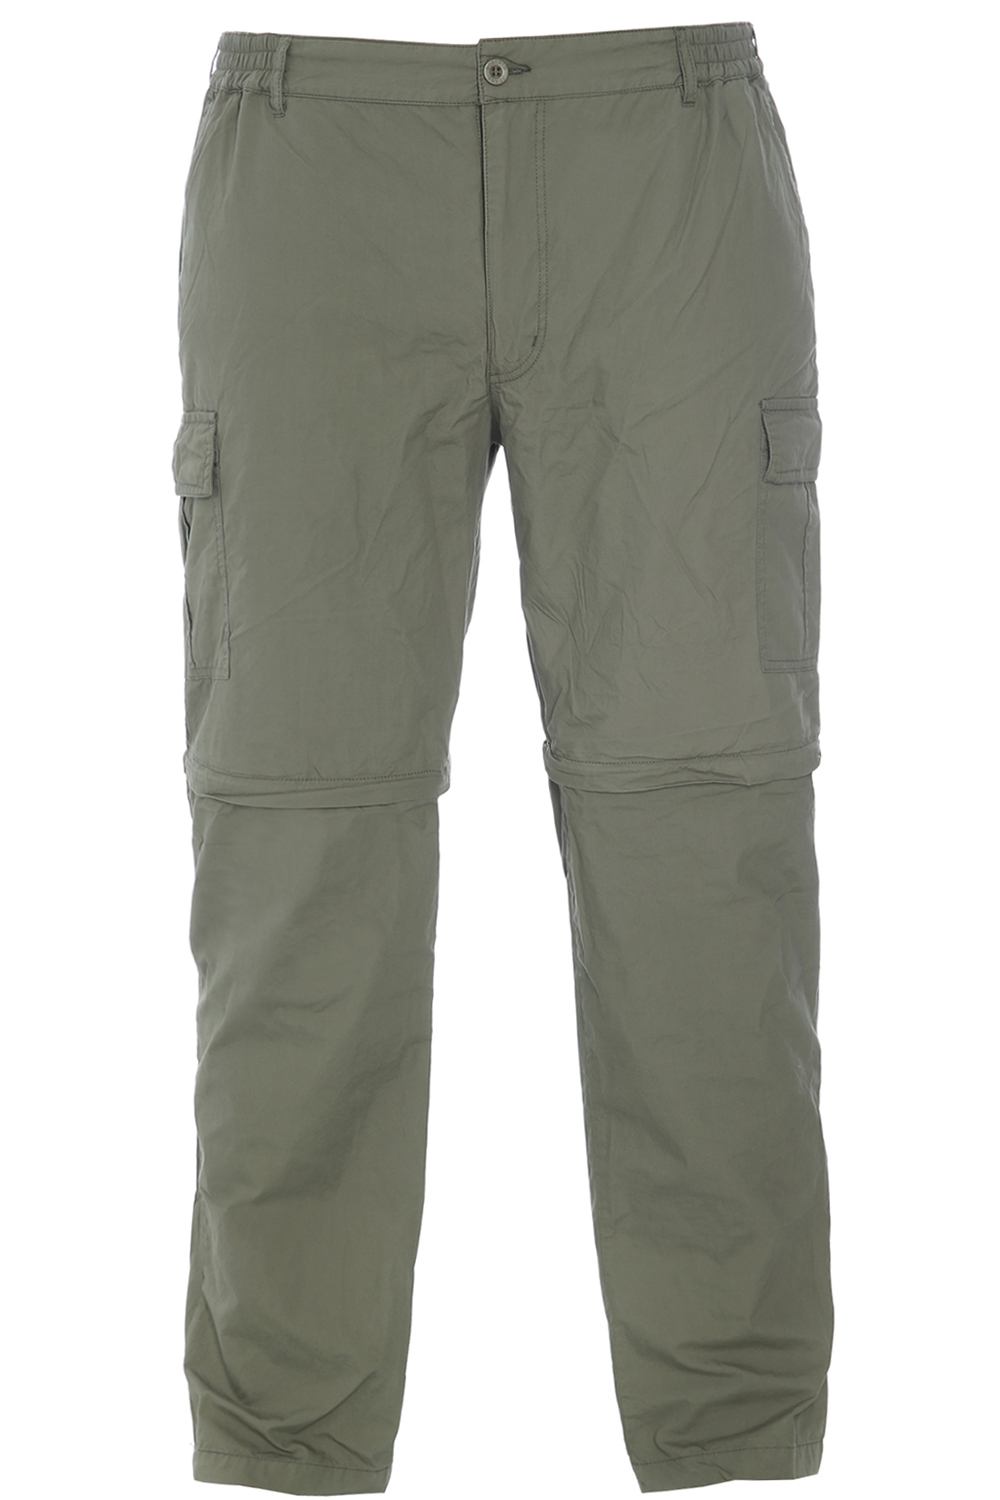 Bukser shorts store størrelser - Roberto - Buks, zip off